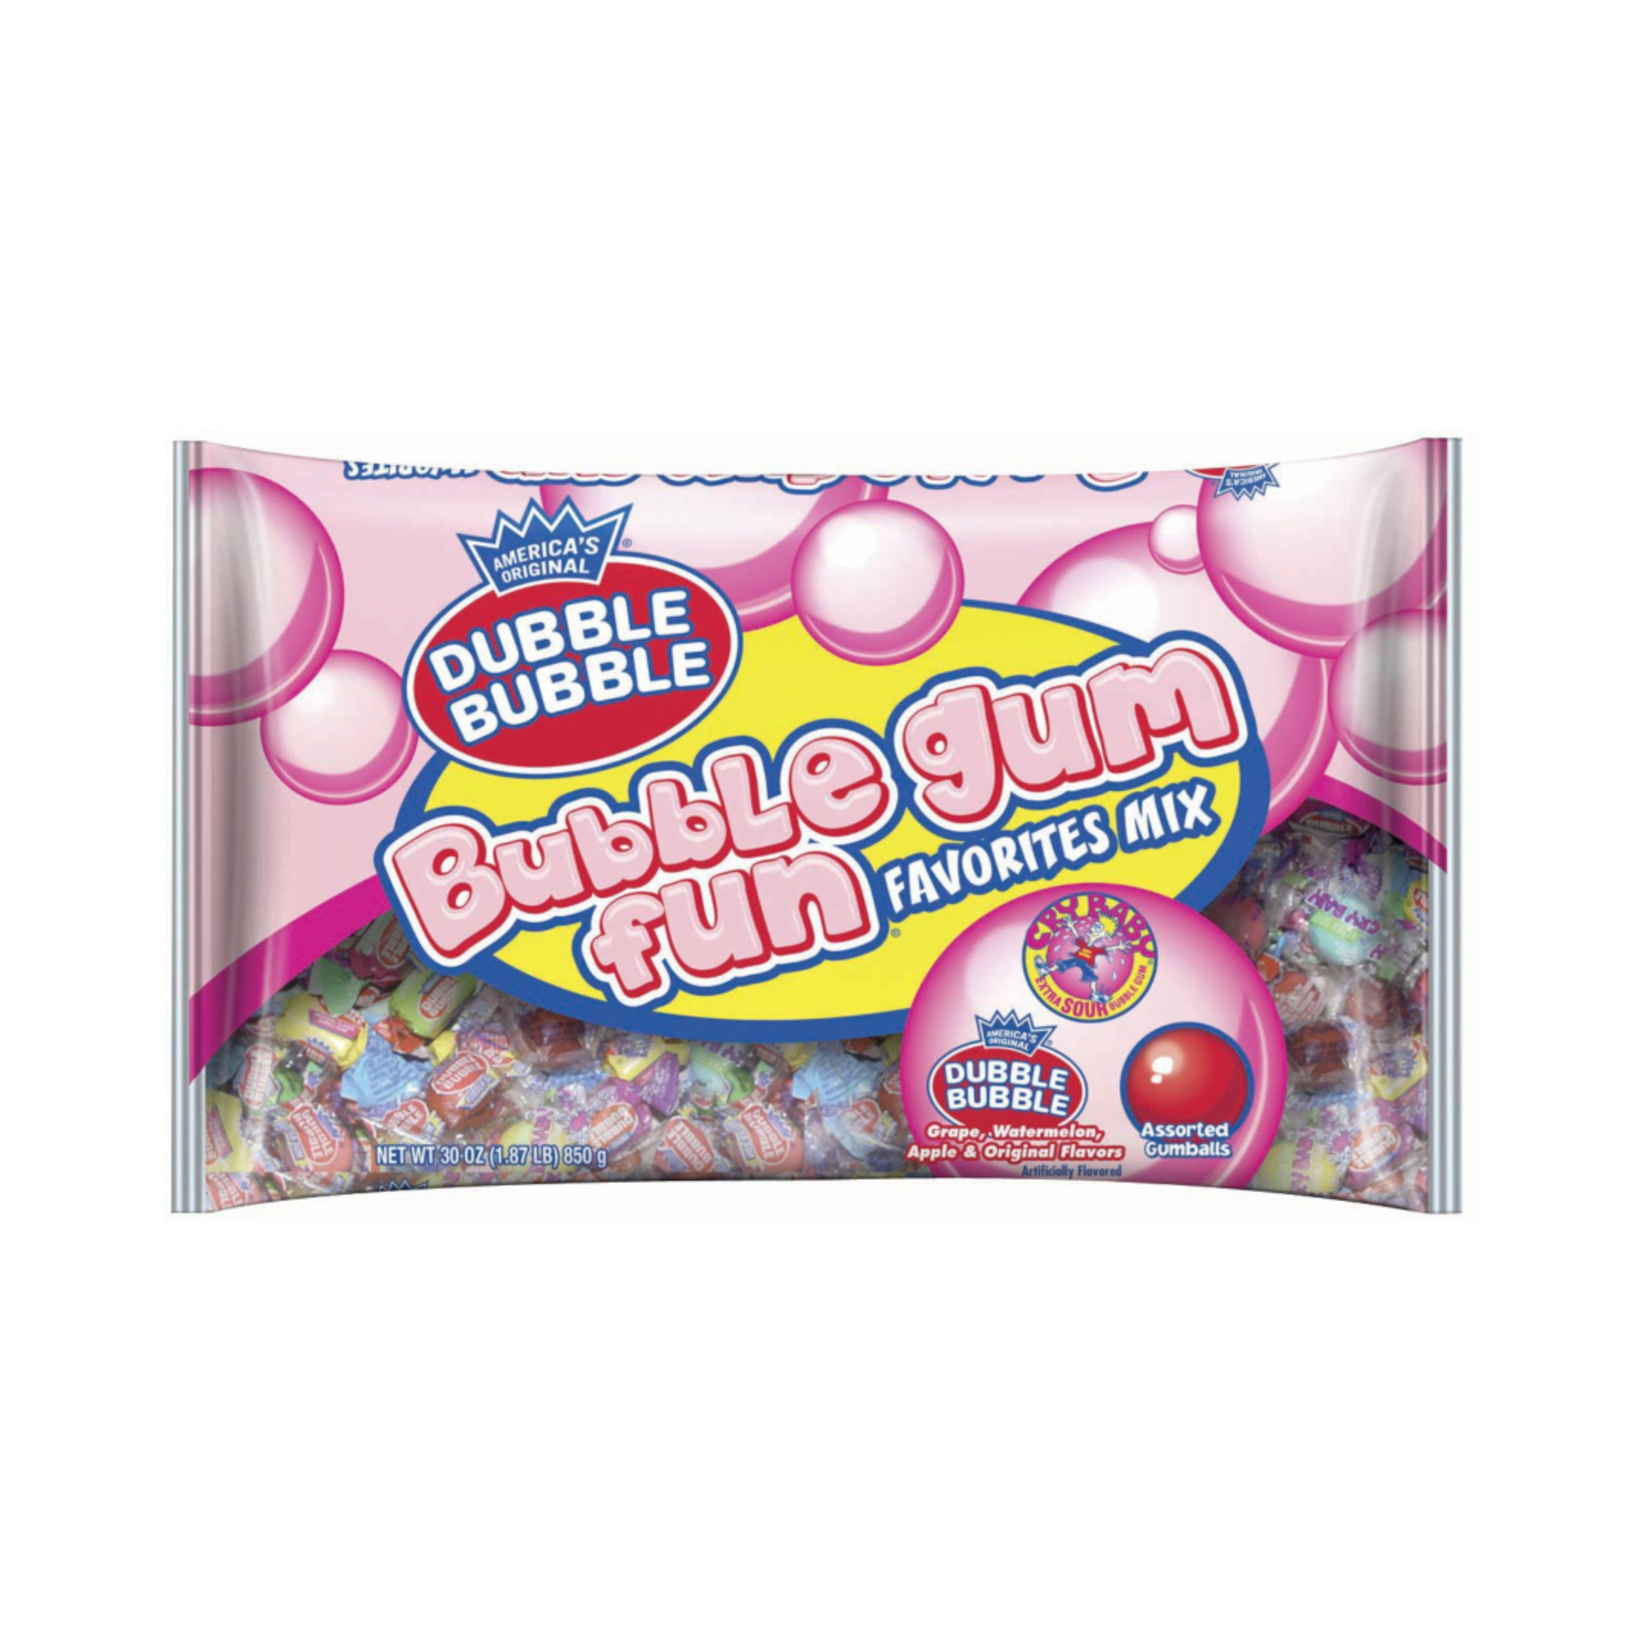 Dubble Bubble Bubble Gum Fun Favorites Mix